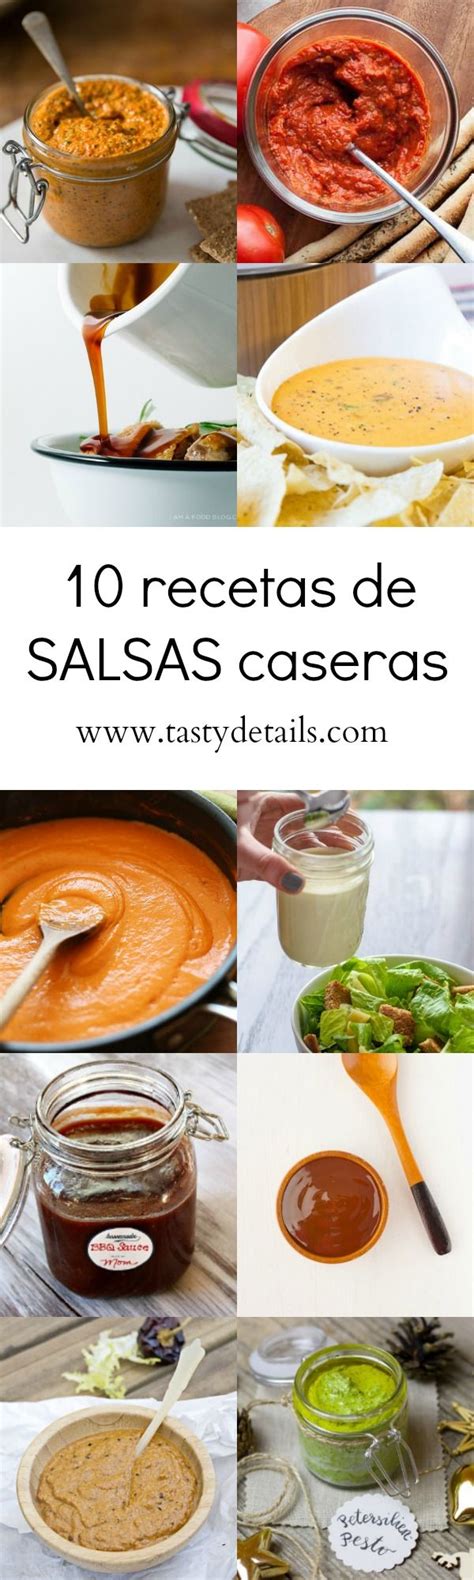 10 Recetas De Salsas Caseras Saludables Tasty Details Recetas De